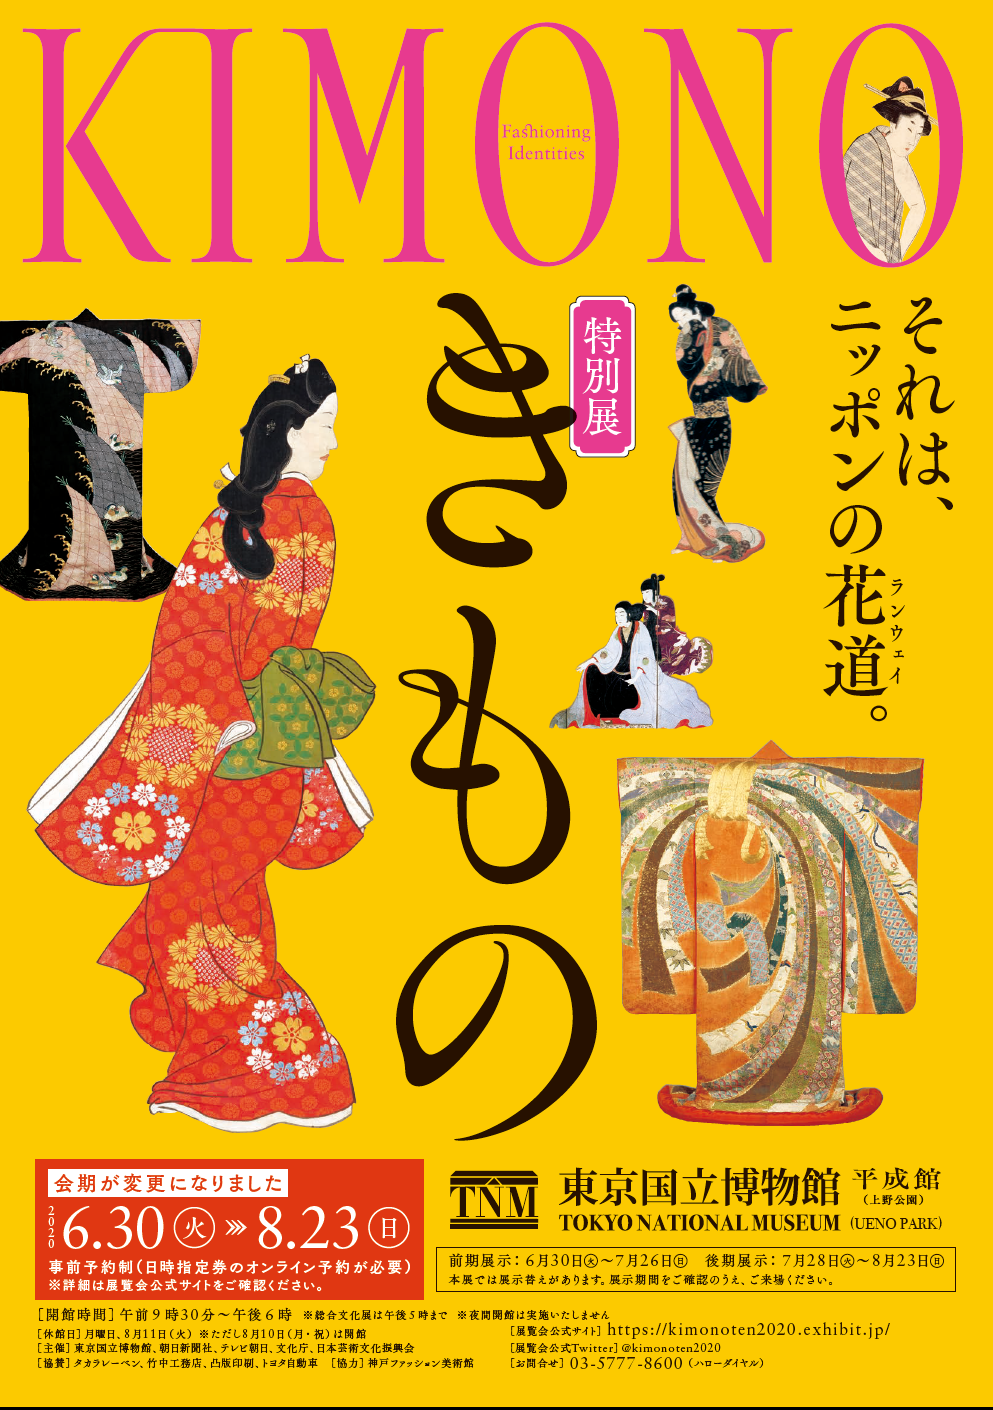 https://www.arc.ritsumei.ac.jp/lib/app/newarc/news/kimono_2020-07-02%20flyer.png